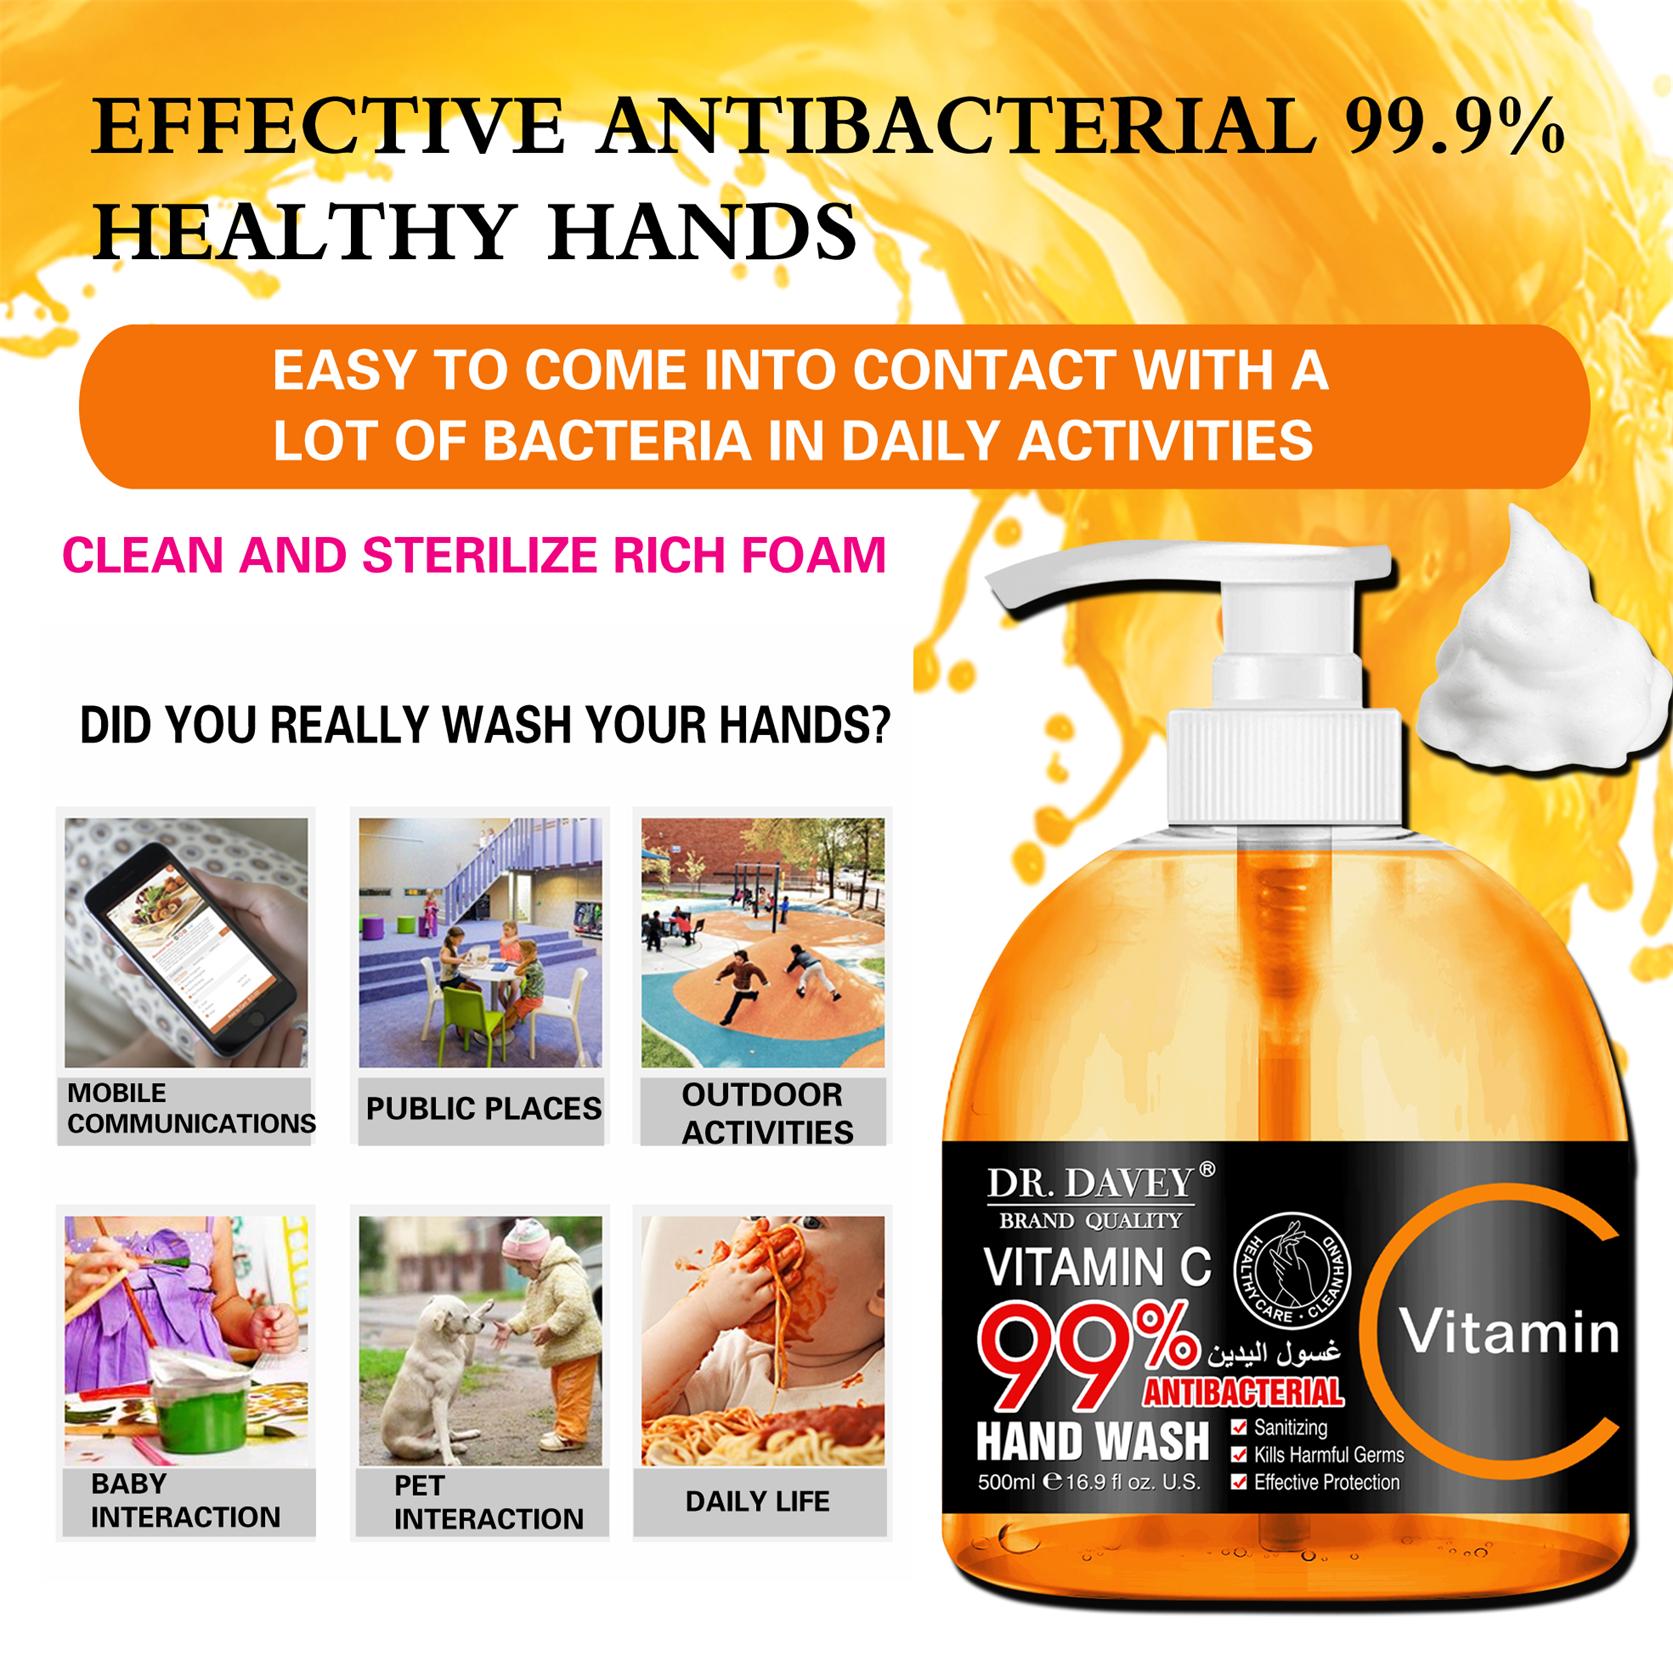 Vitamin C hand wash